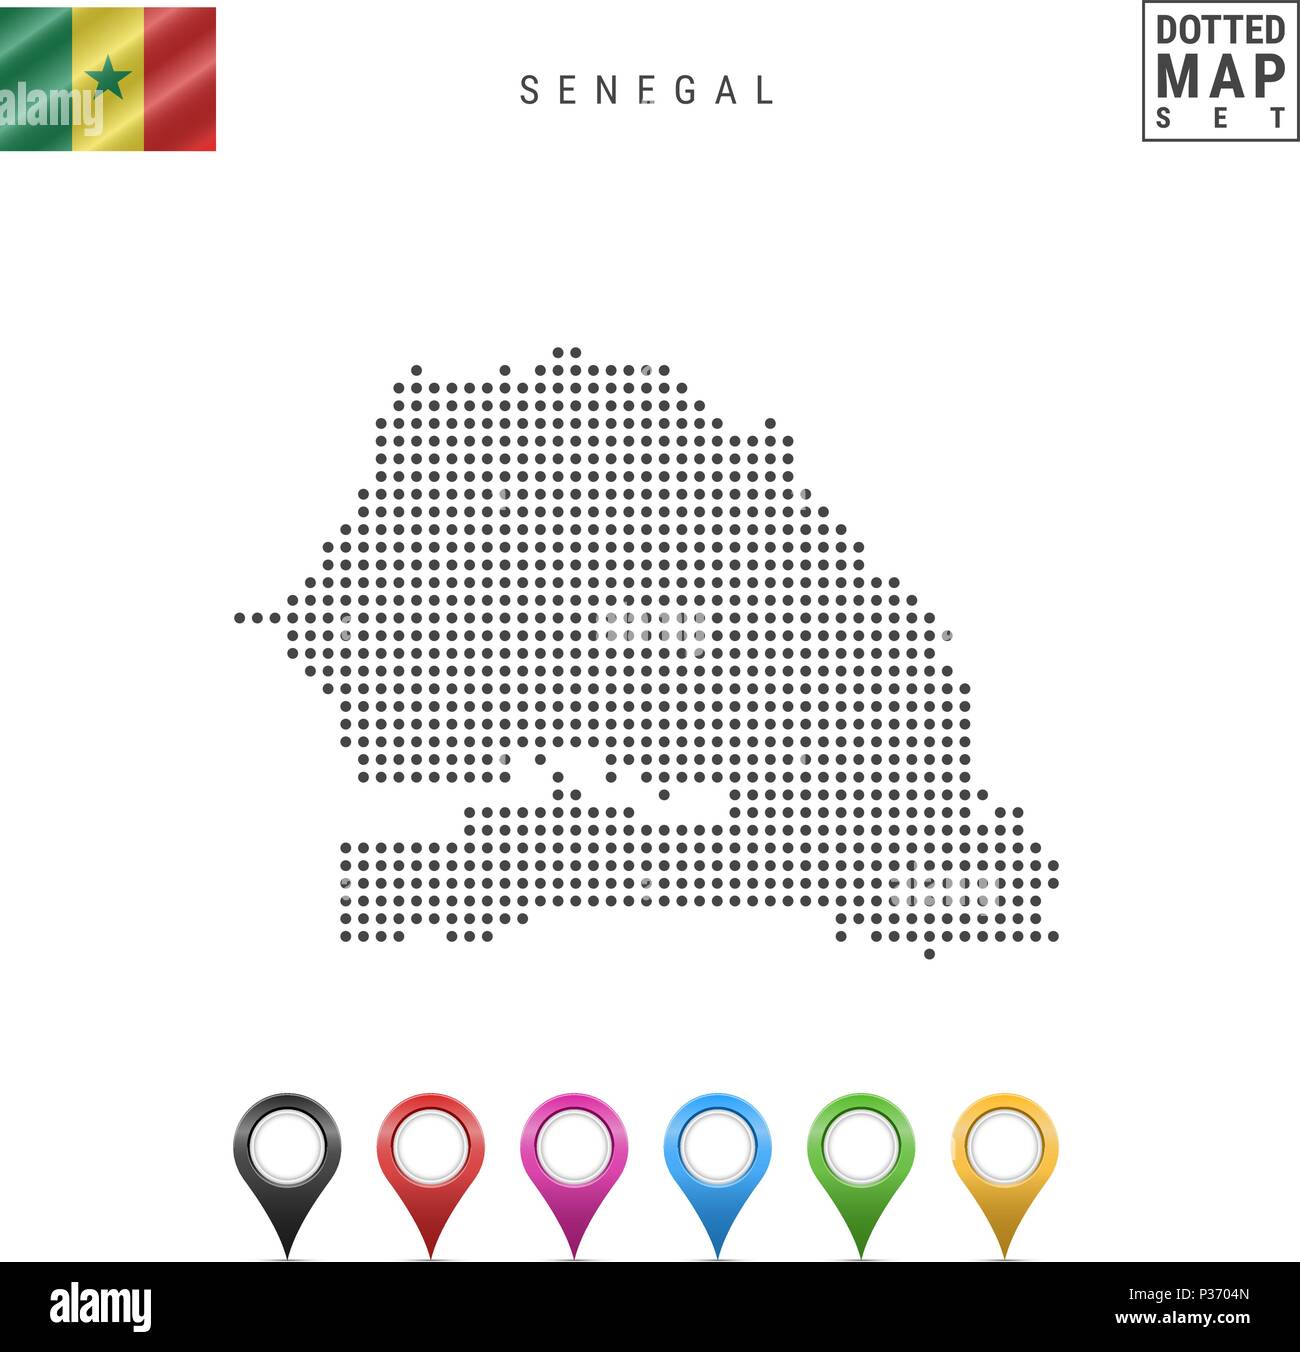 La carte à points vecteur du Sénégal. Silhouette simple du Sénégal. Drapeau national du Sénégal. Ensemble de marqueurs carte multicolore Illustration de Vecteur